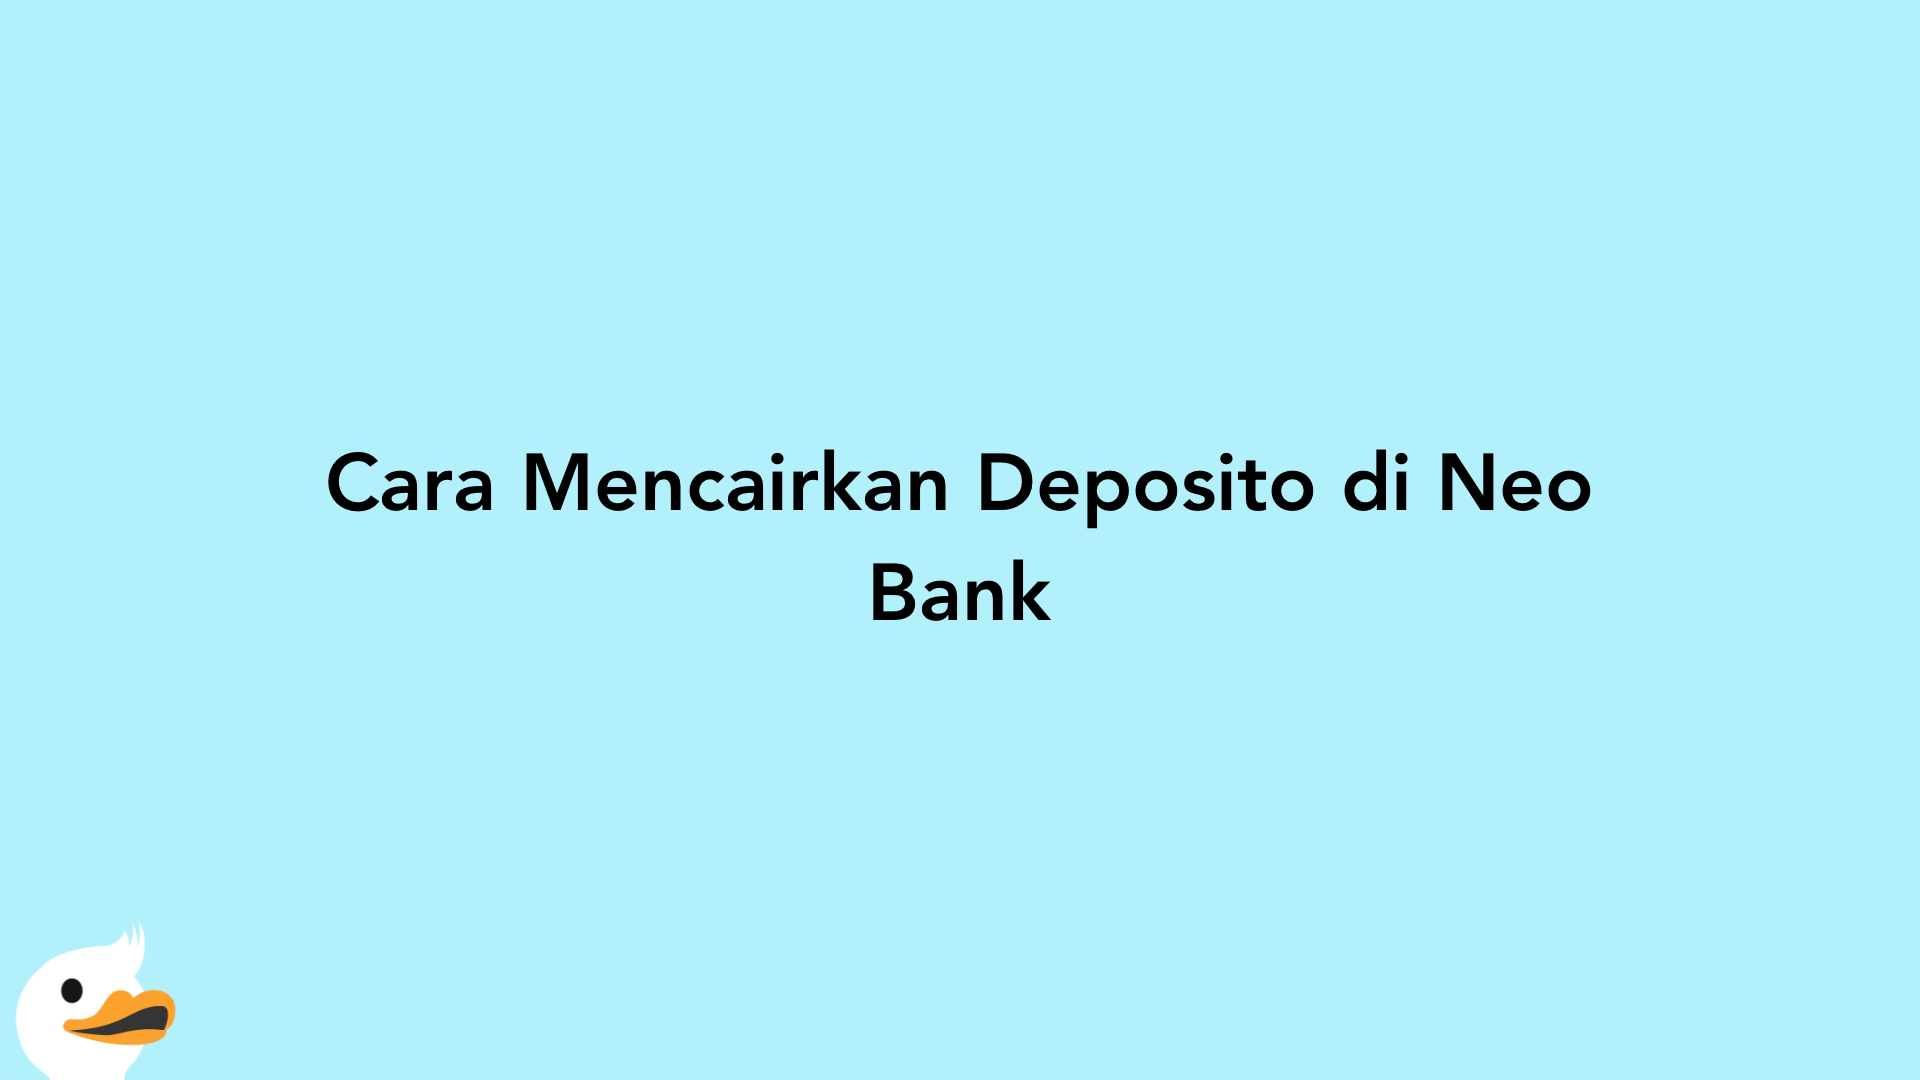 Cara Mencairkan Deposito di Neo Bank